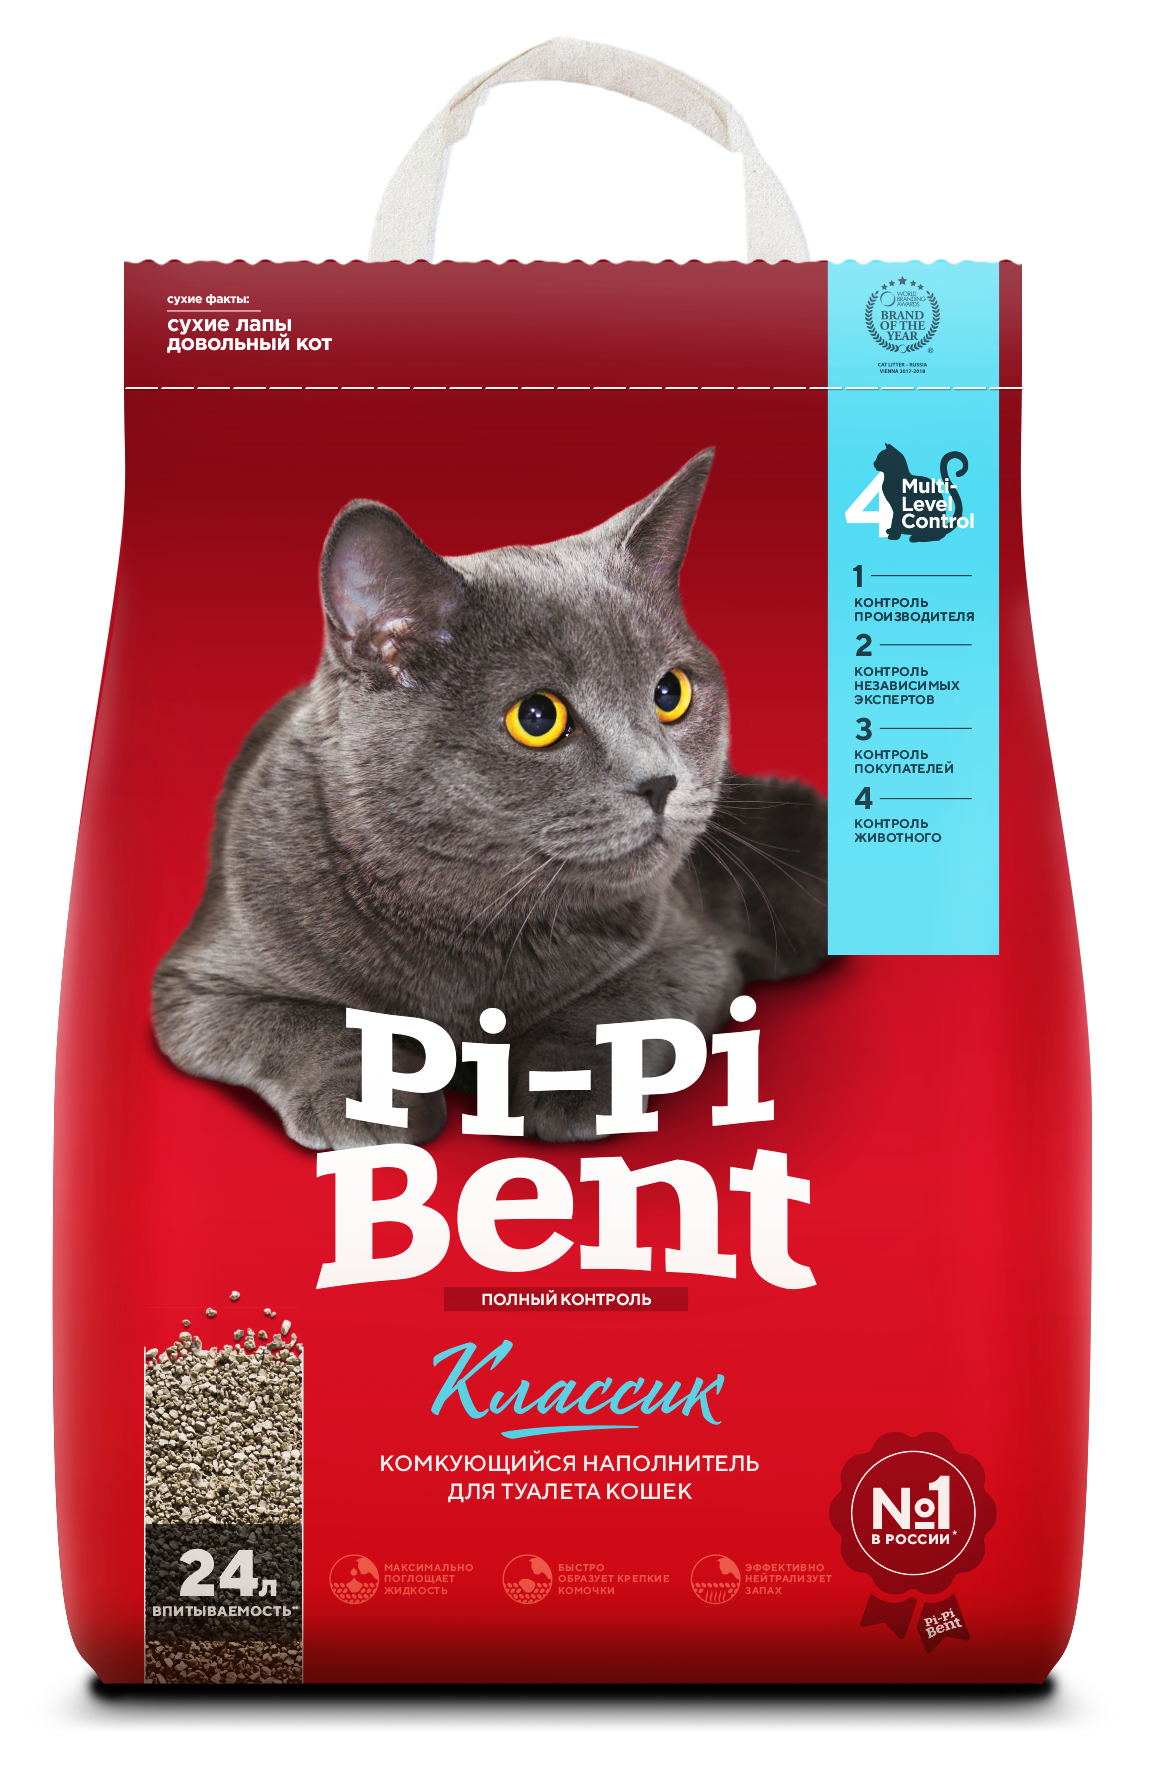 Pi-Pi-Bent Классик наполнитель для кошачьего туалета, комкующийся